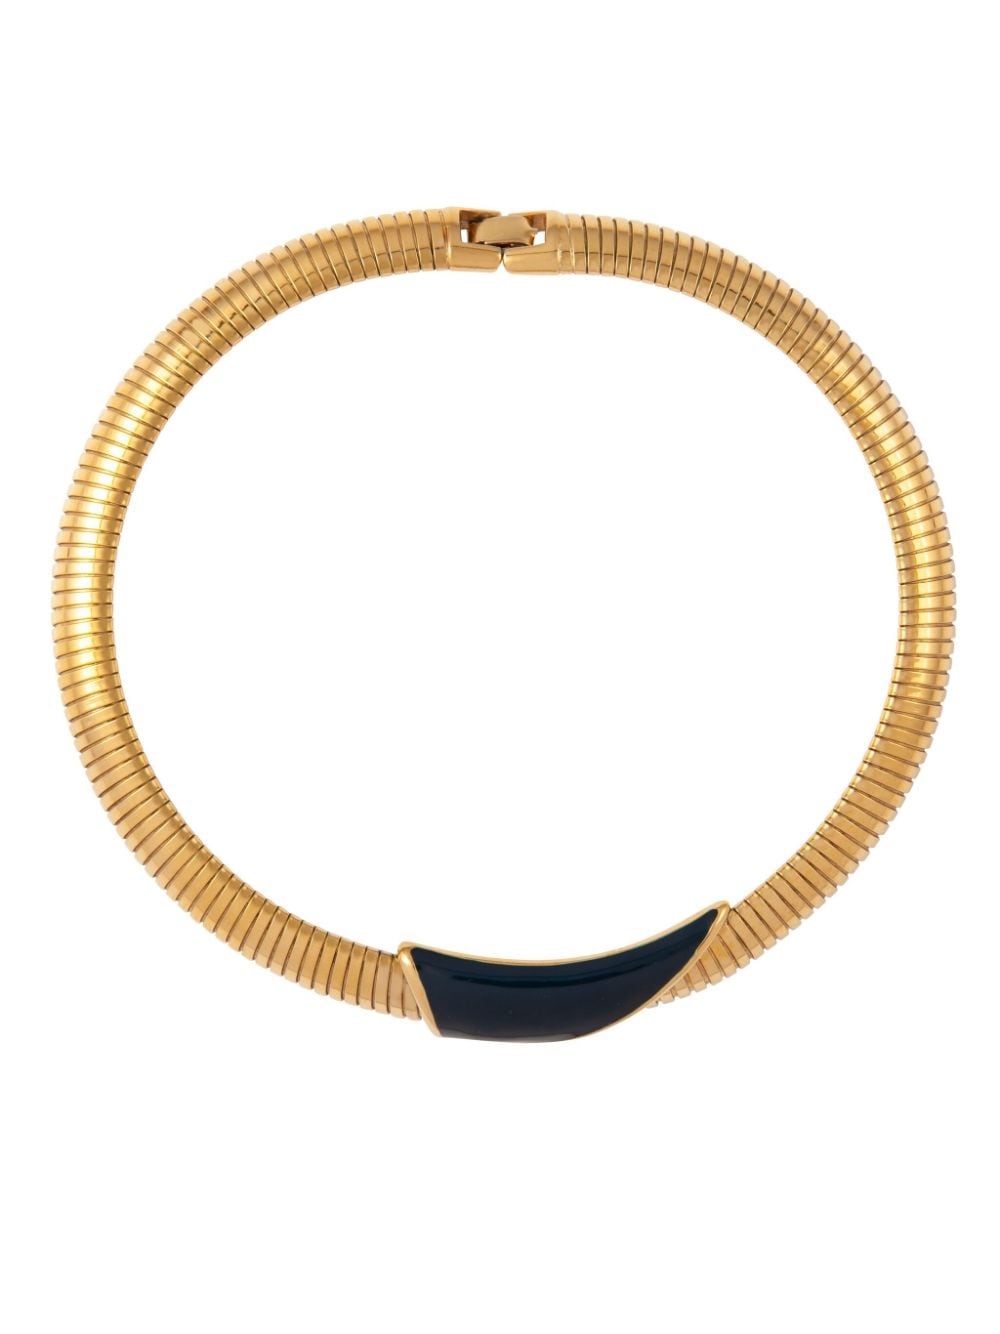 Susan Caplan Vintage 1980s Monet snake-chain necklace - Gold von Susan Caplan Vintage